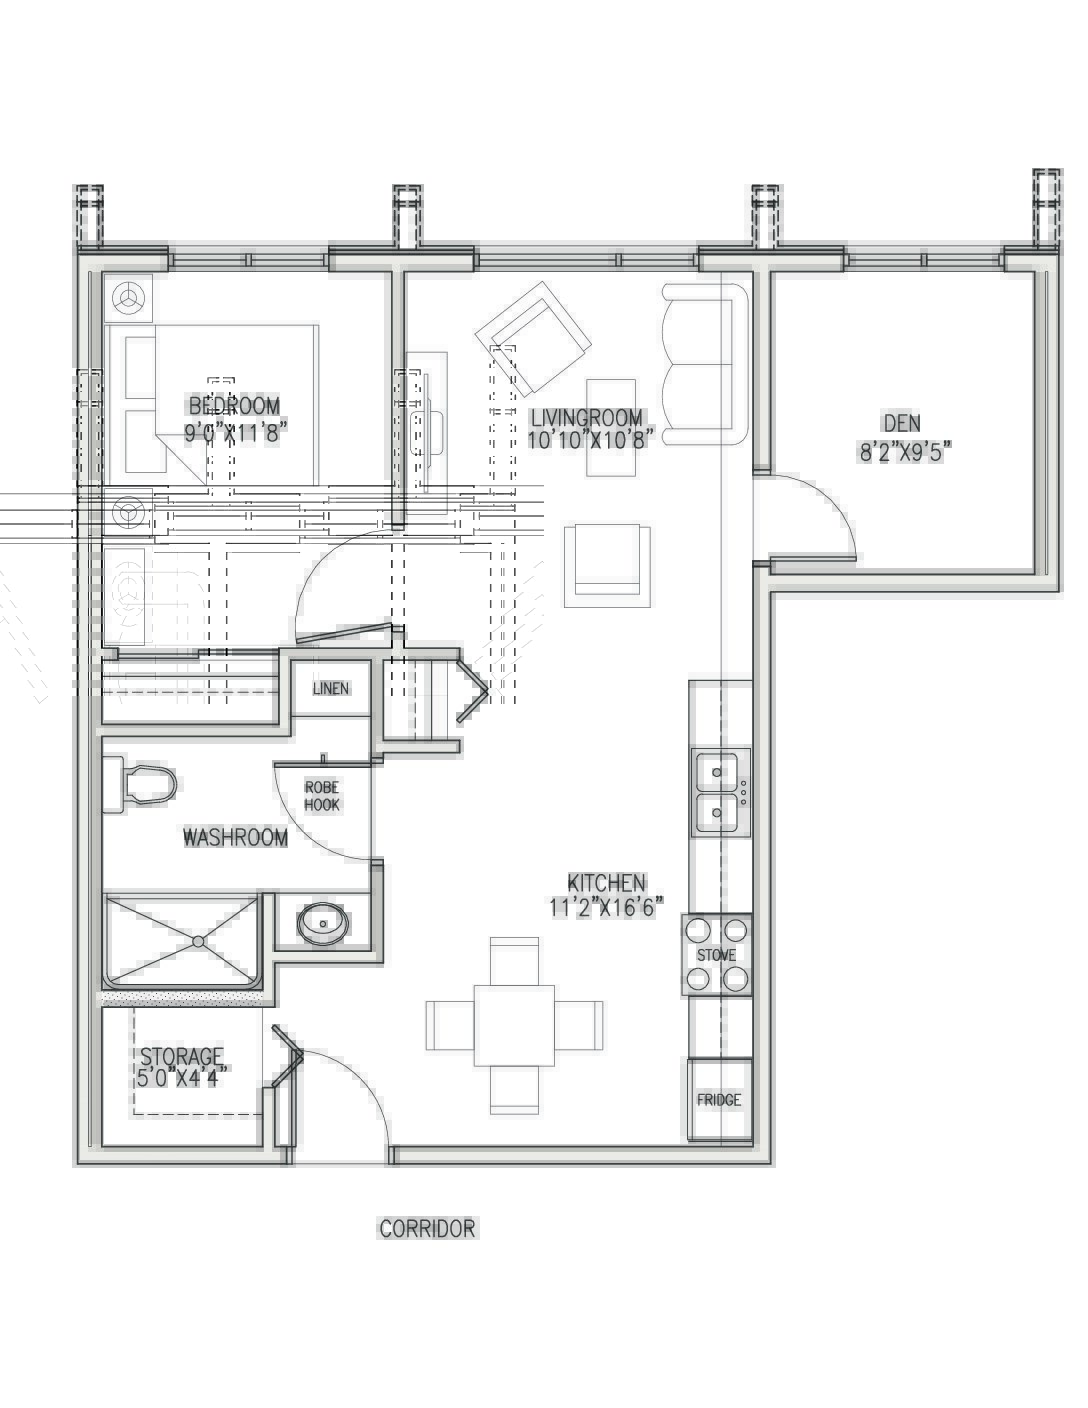 View or Print PDF of 1 Bedroom plus den floor plan in new tab